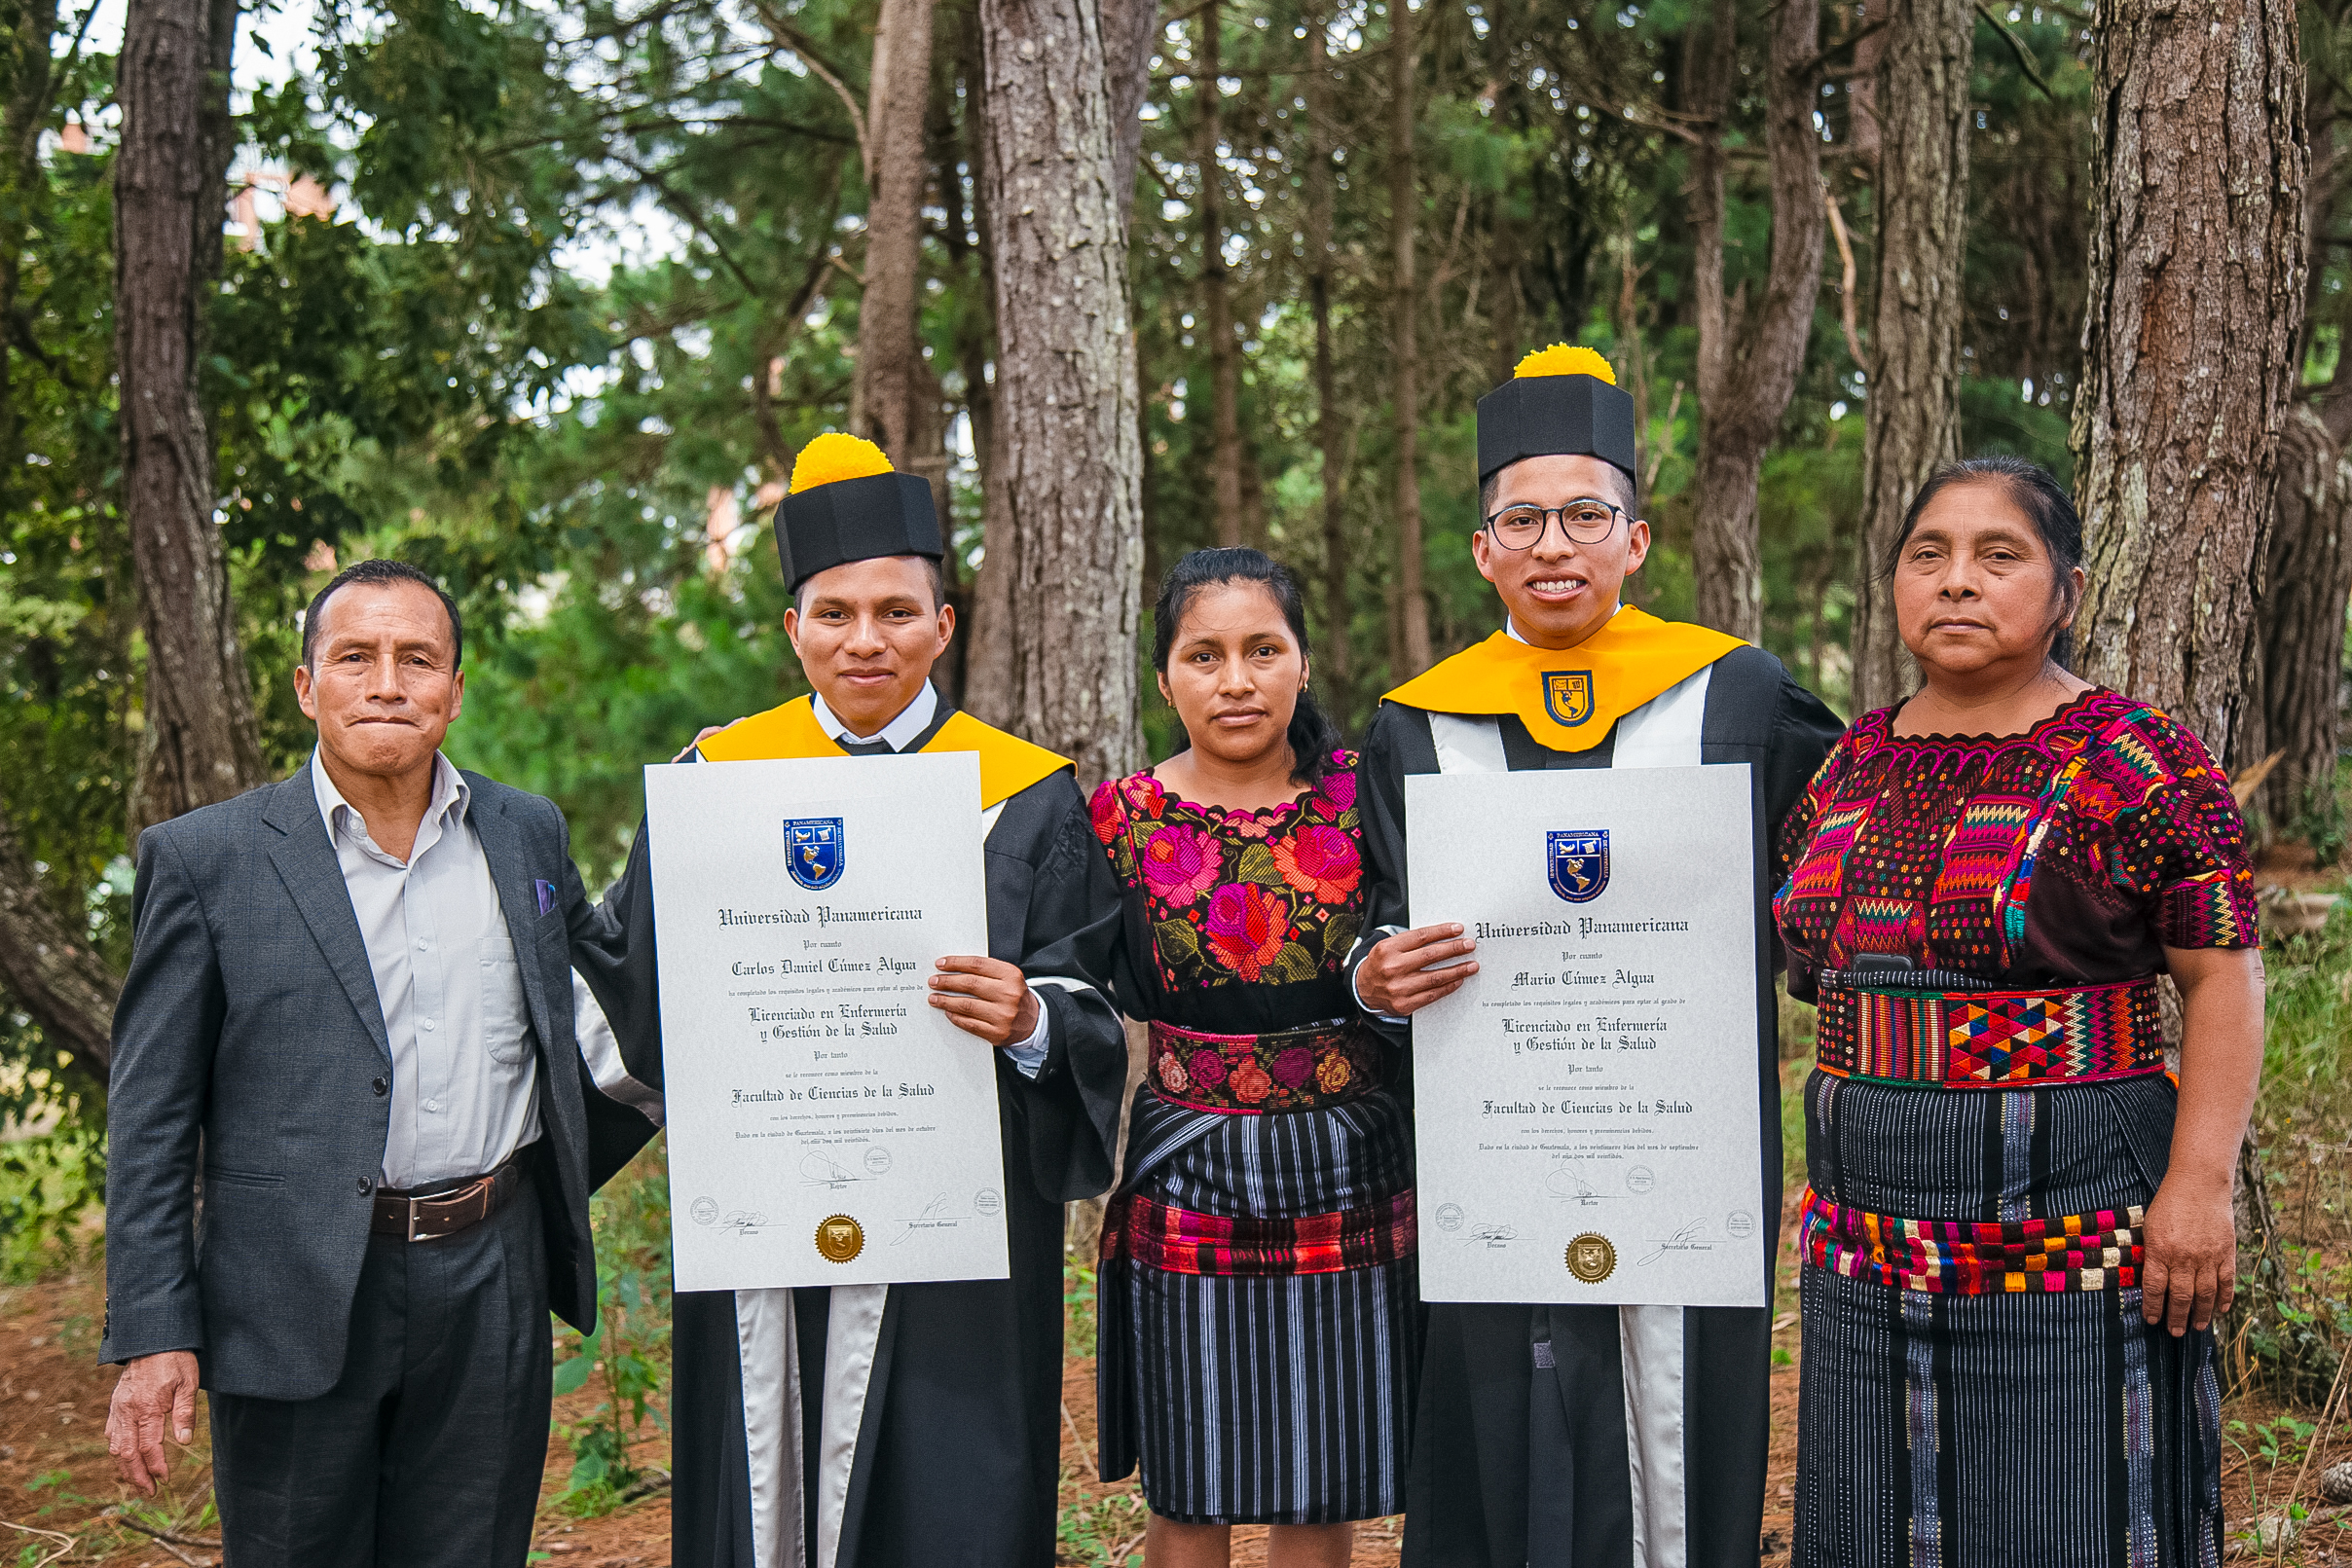 Los hermanos Cúmez junto a sus padres celebran este gran triunfo académico.
Foto Prensa Libre: Cortesía